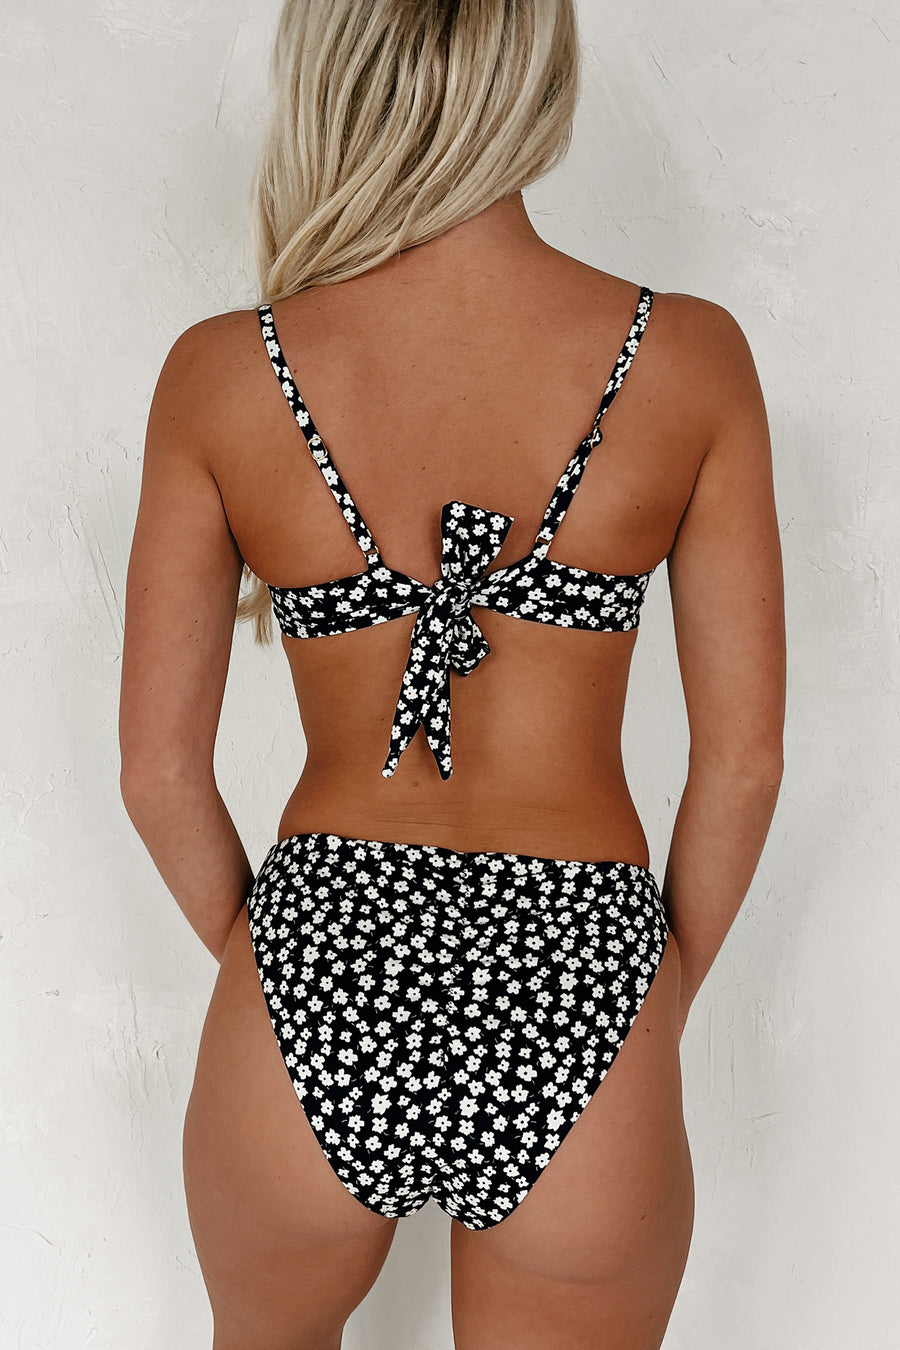 Floating On Sunshine Floral Underwire Bikini Set (Black) - NanaMacs